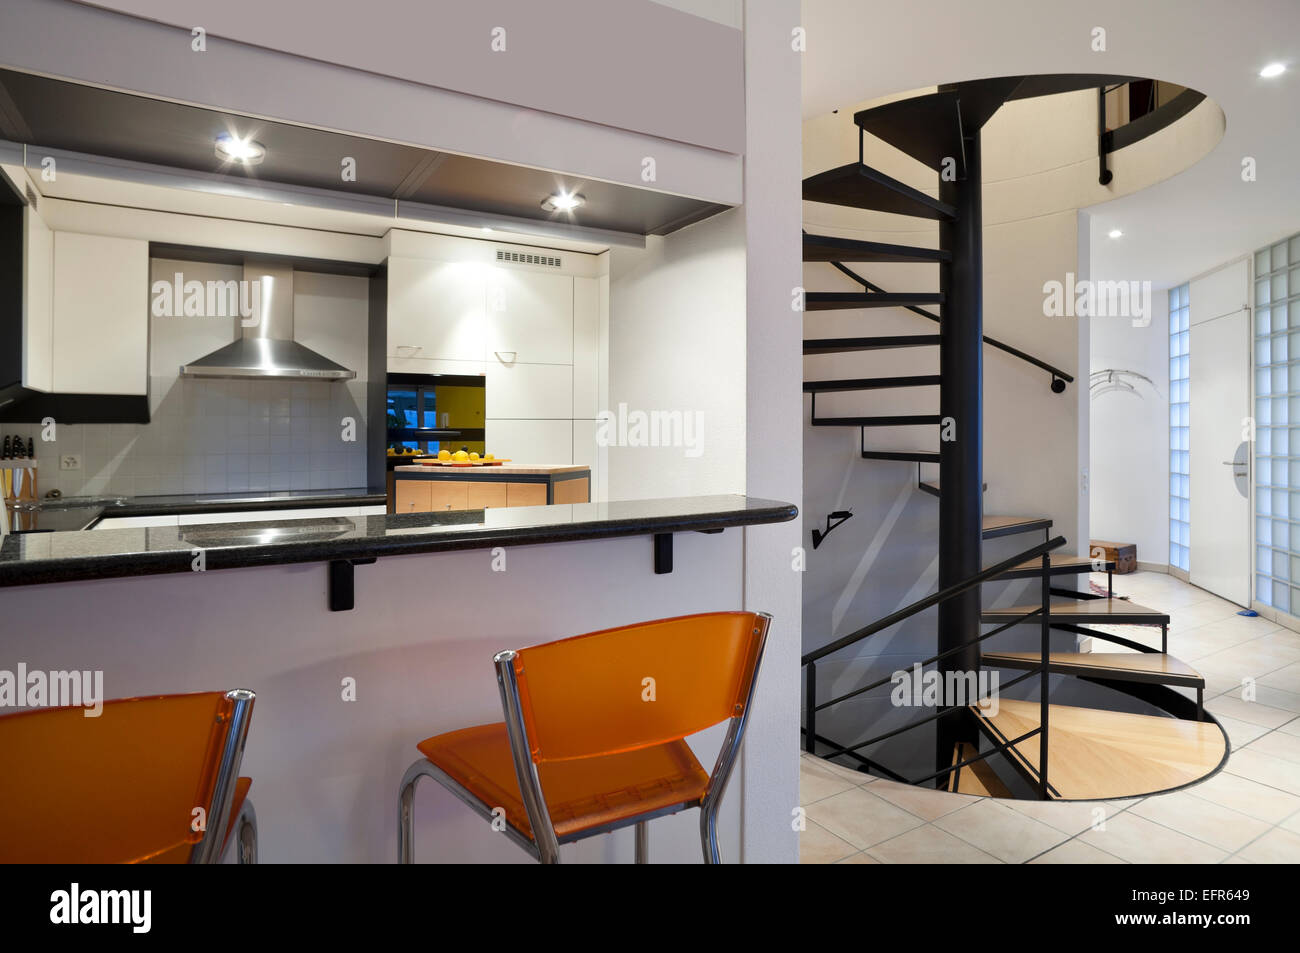 Bel appartement intérieur, mobilier moderne Banque D'Images